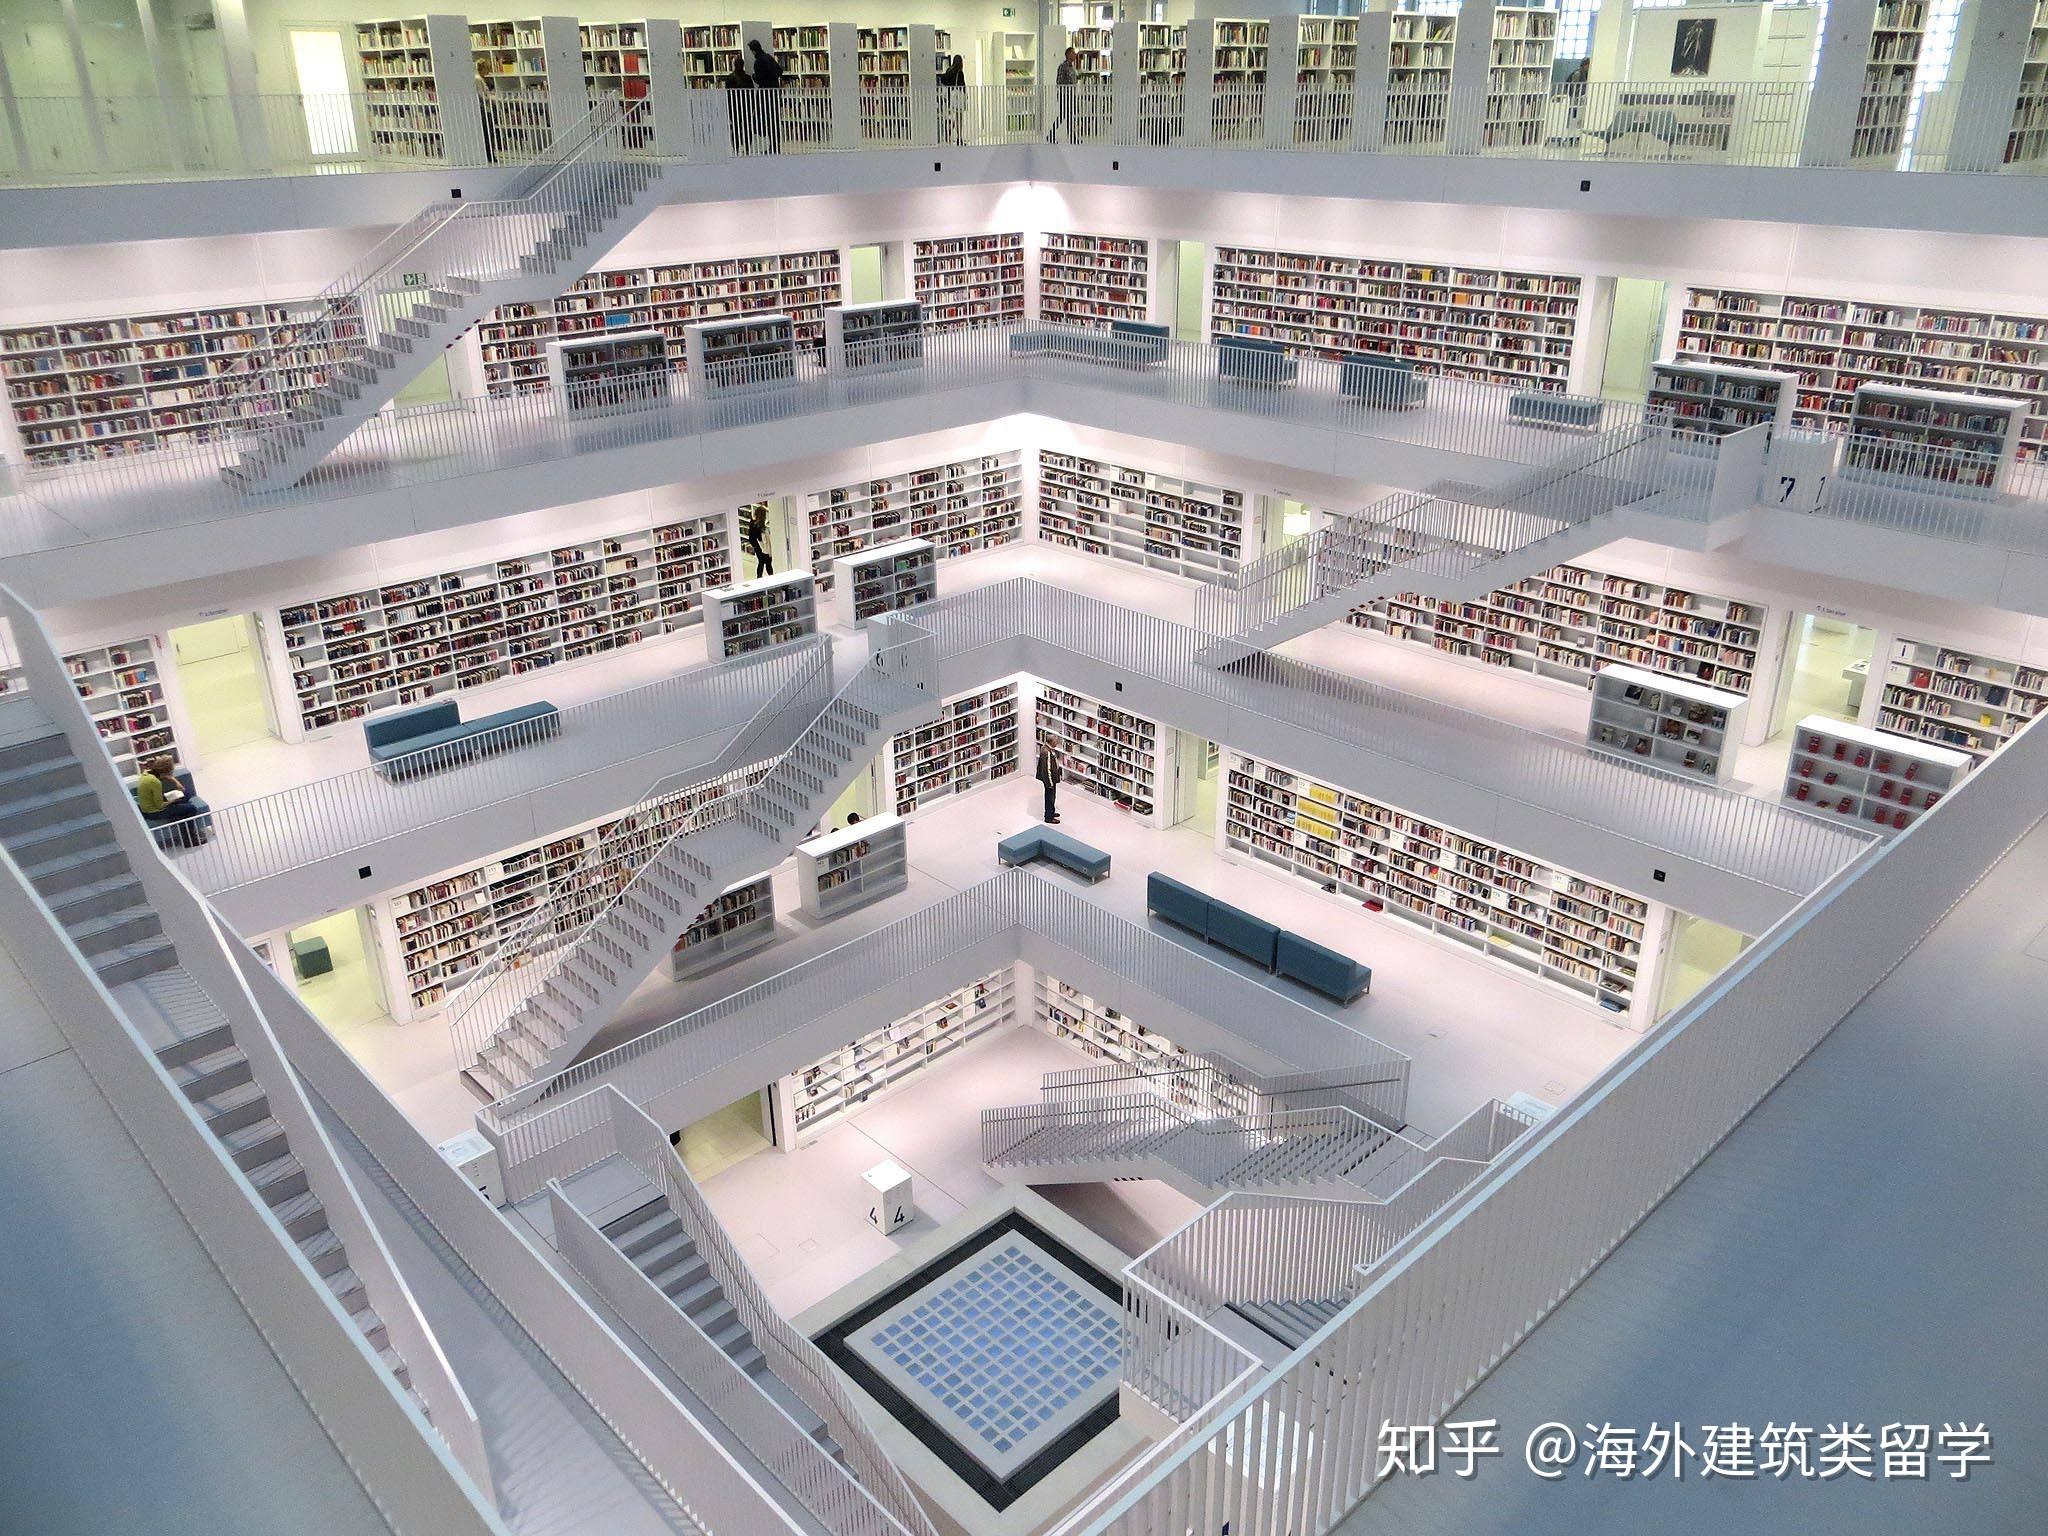 20个世界上最美图书馆，来感受一下吧! - 知乎